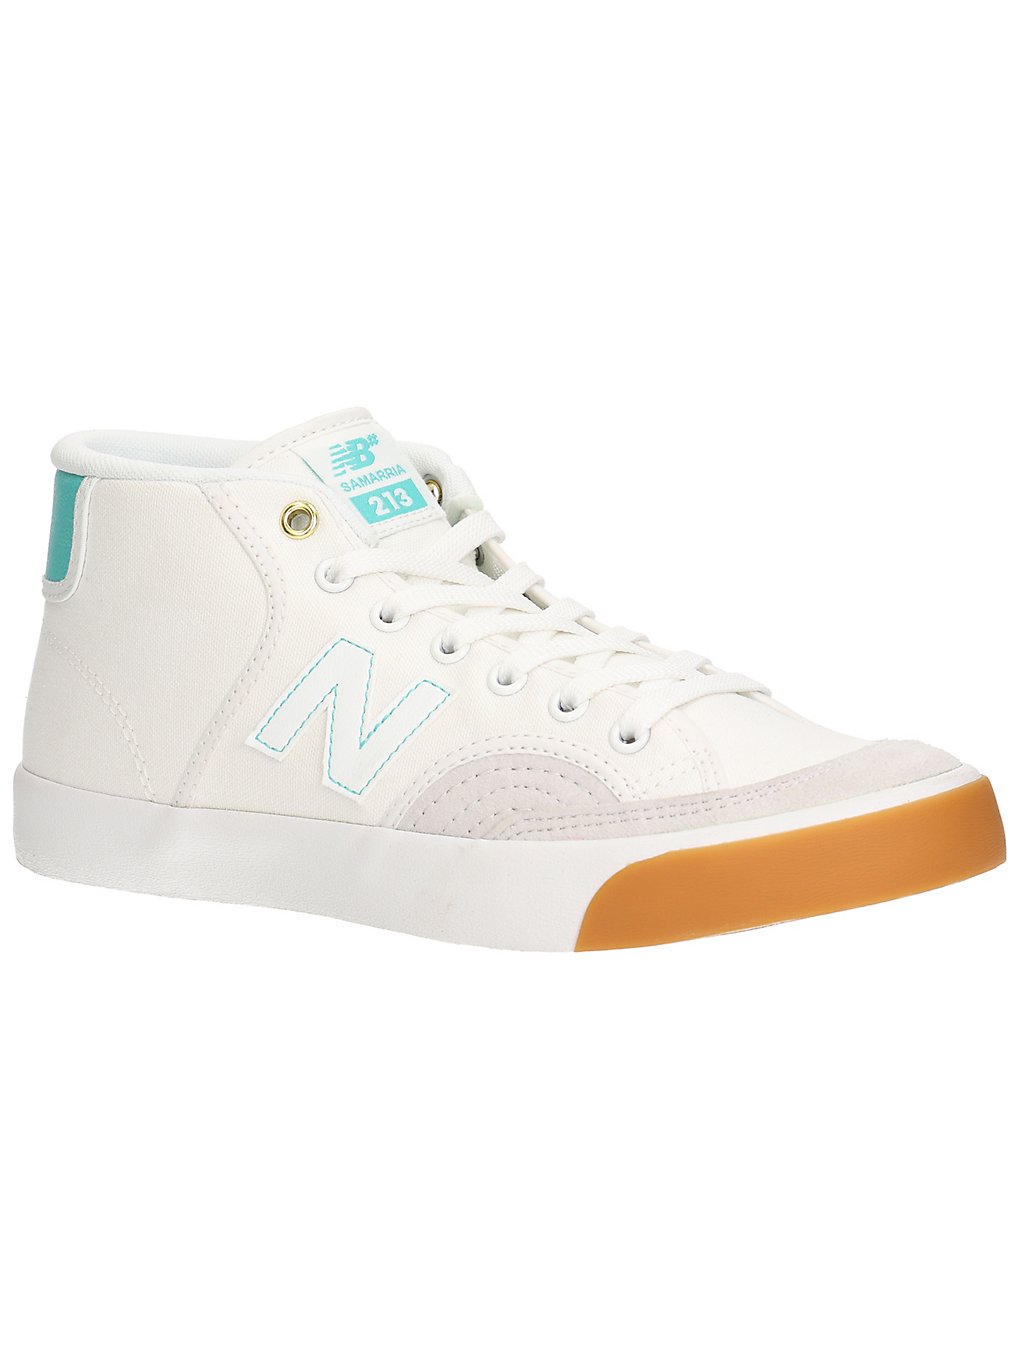 New Balance Numeric NM213 Skate Shoes hvit